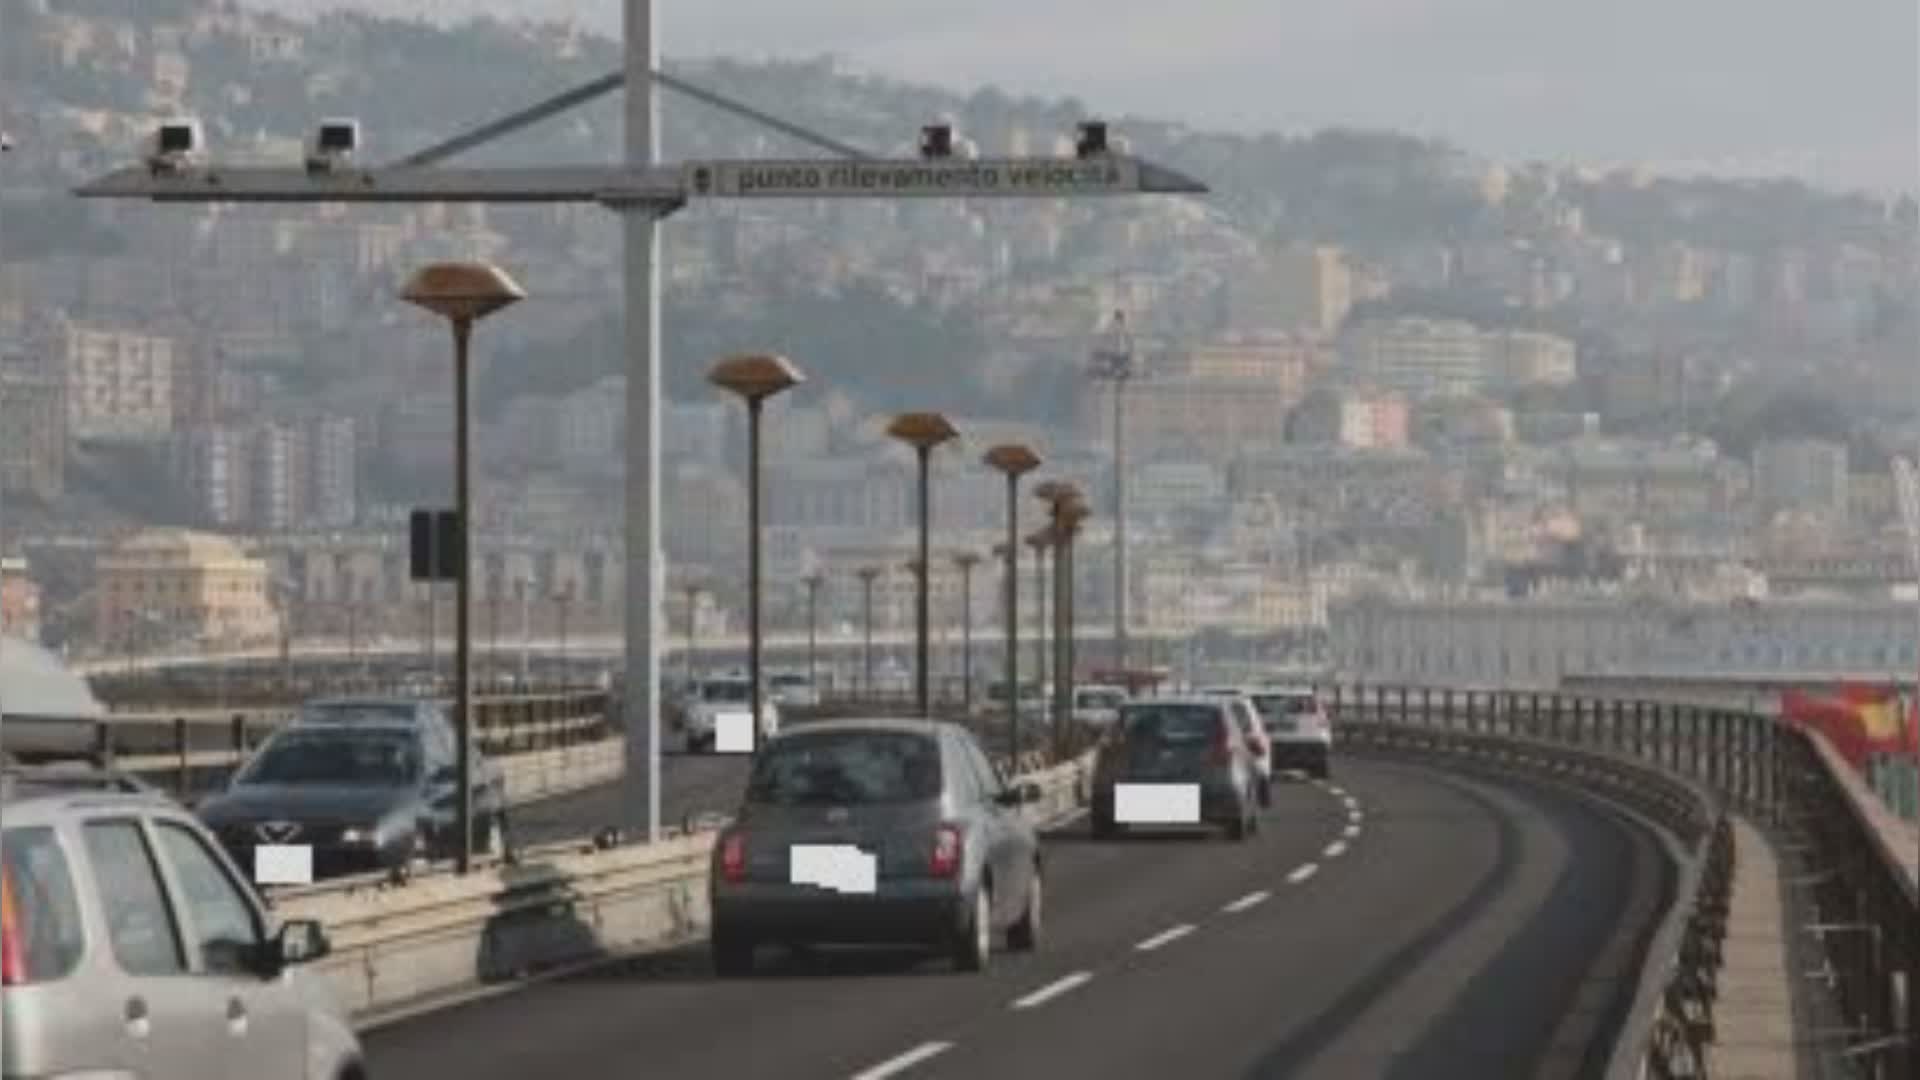 Allerta meteo a Genova, Sopraelevata chiusa ai motocicli fino a martedì 29